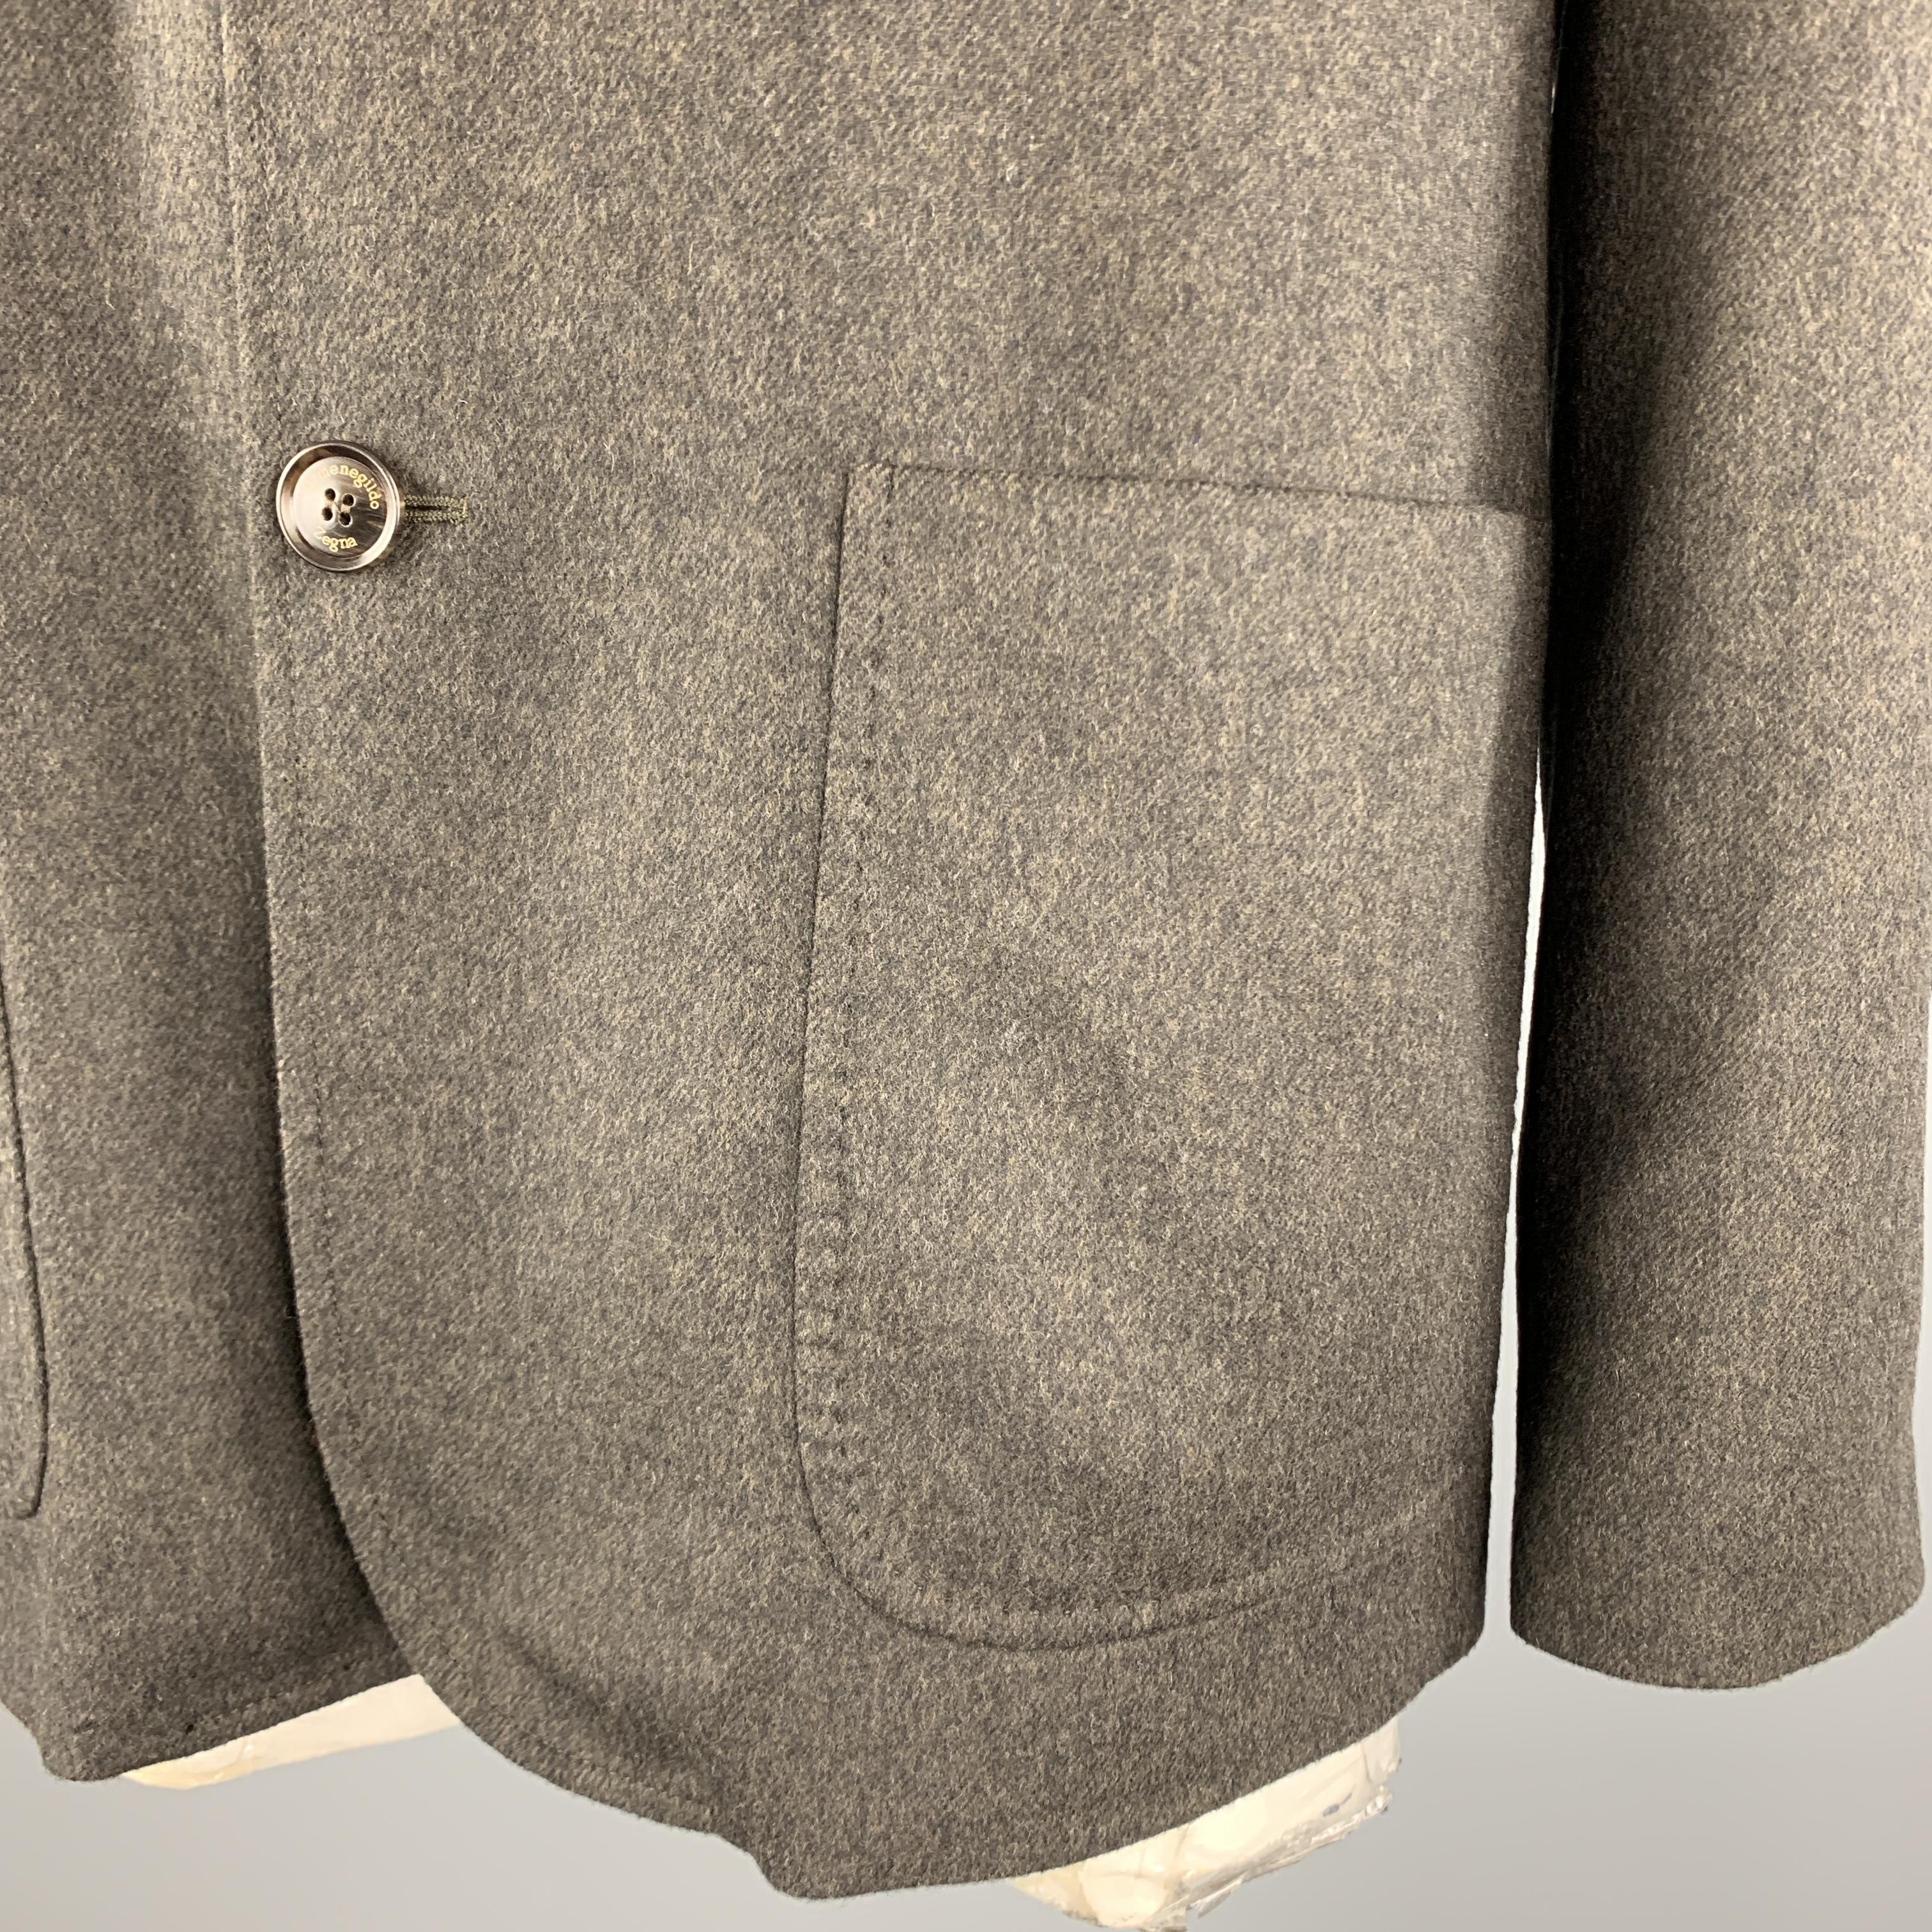 1967 nehru jacket